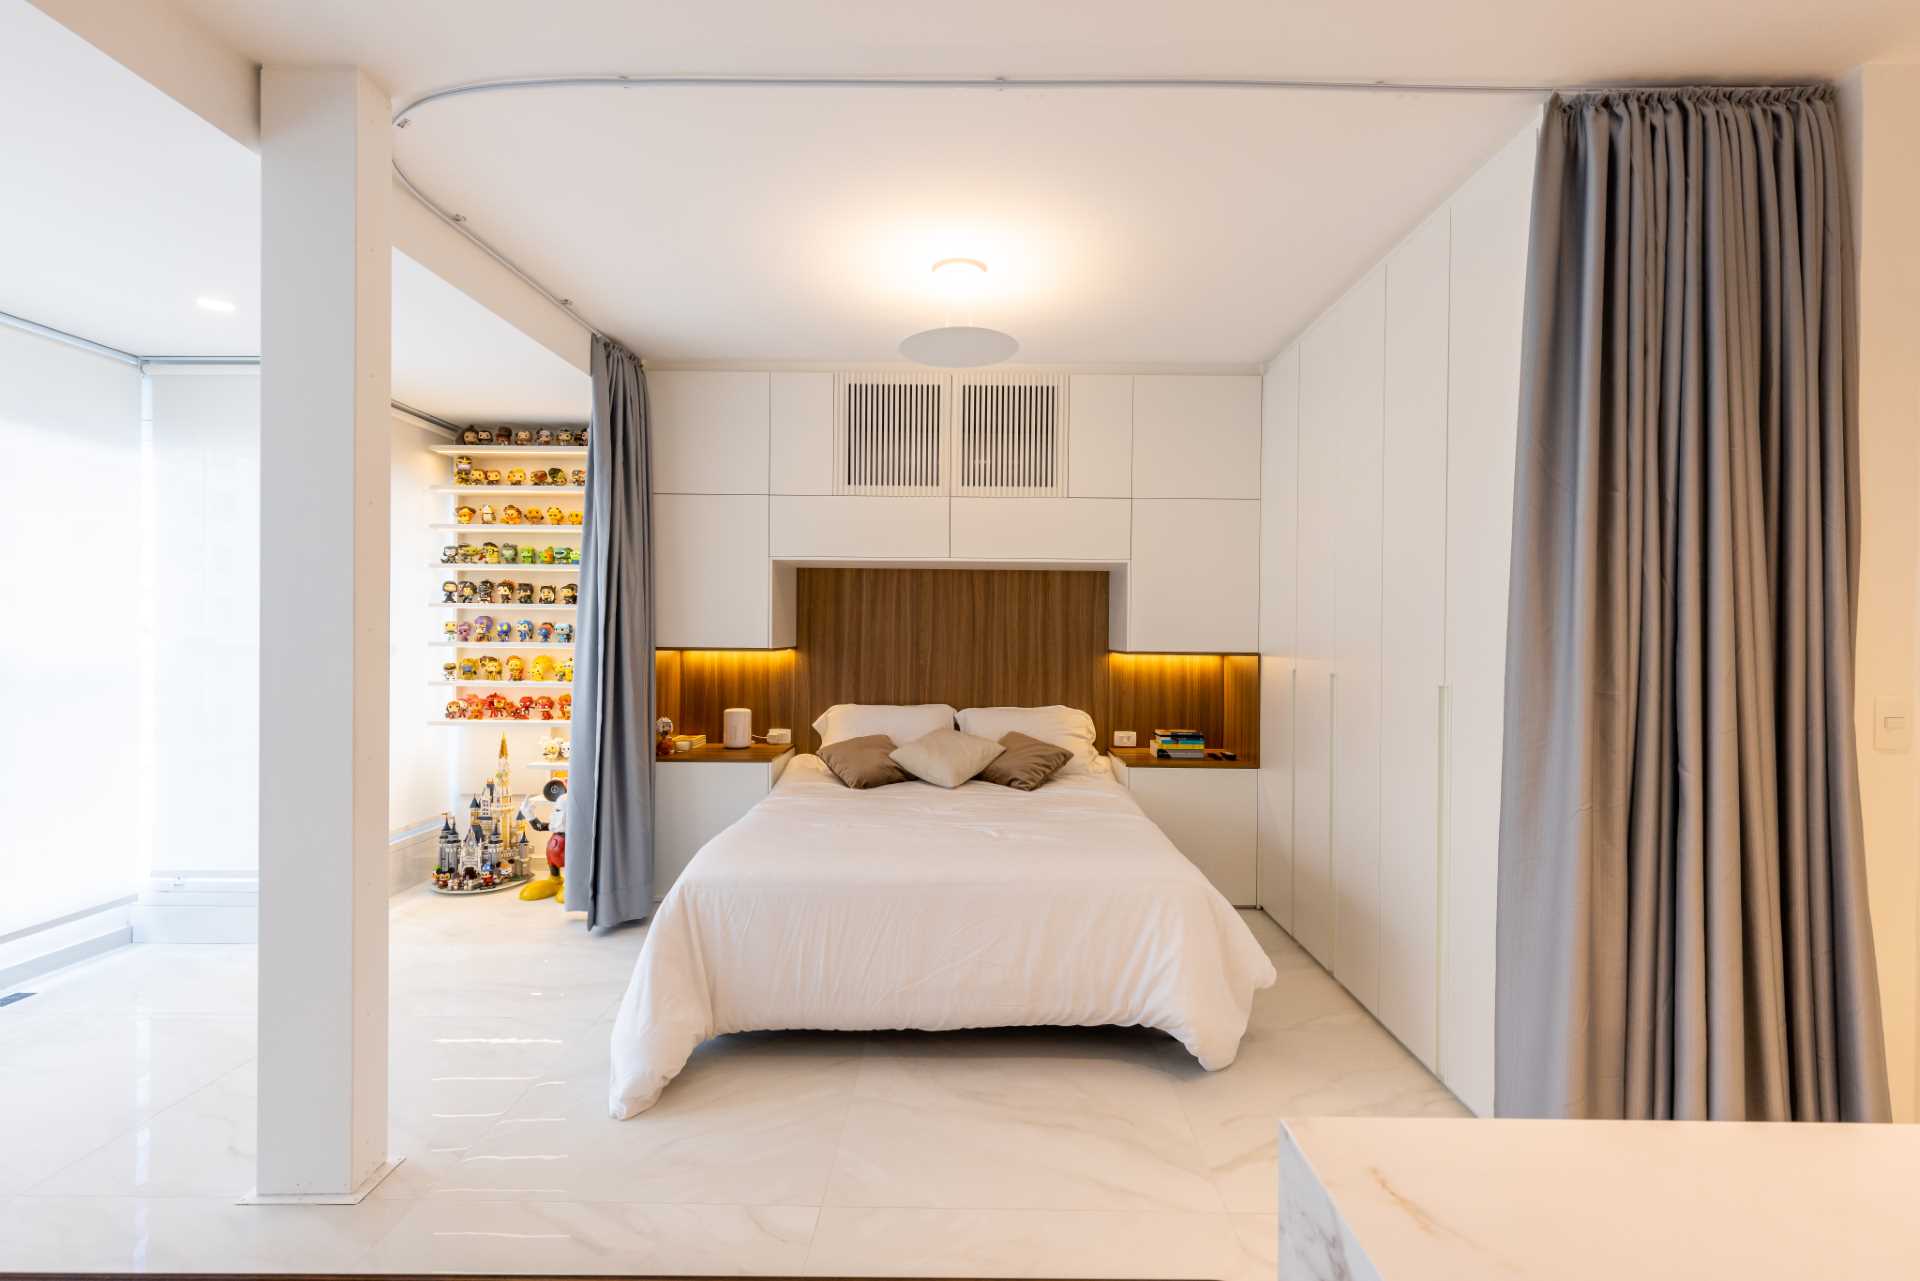 یک اتاق خواب مدرن با طرح باز با پرده برای دیوار.